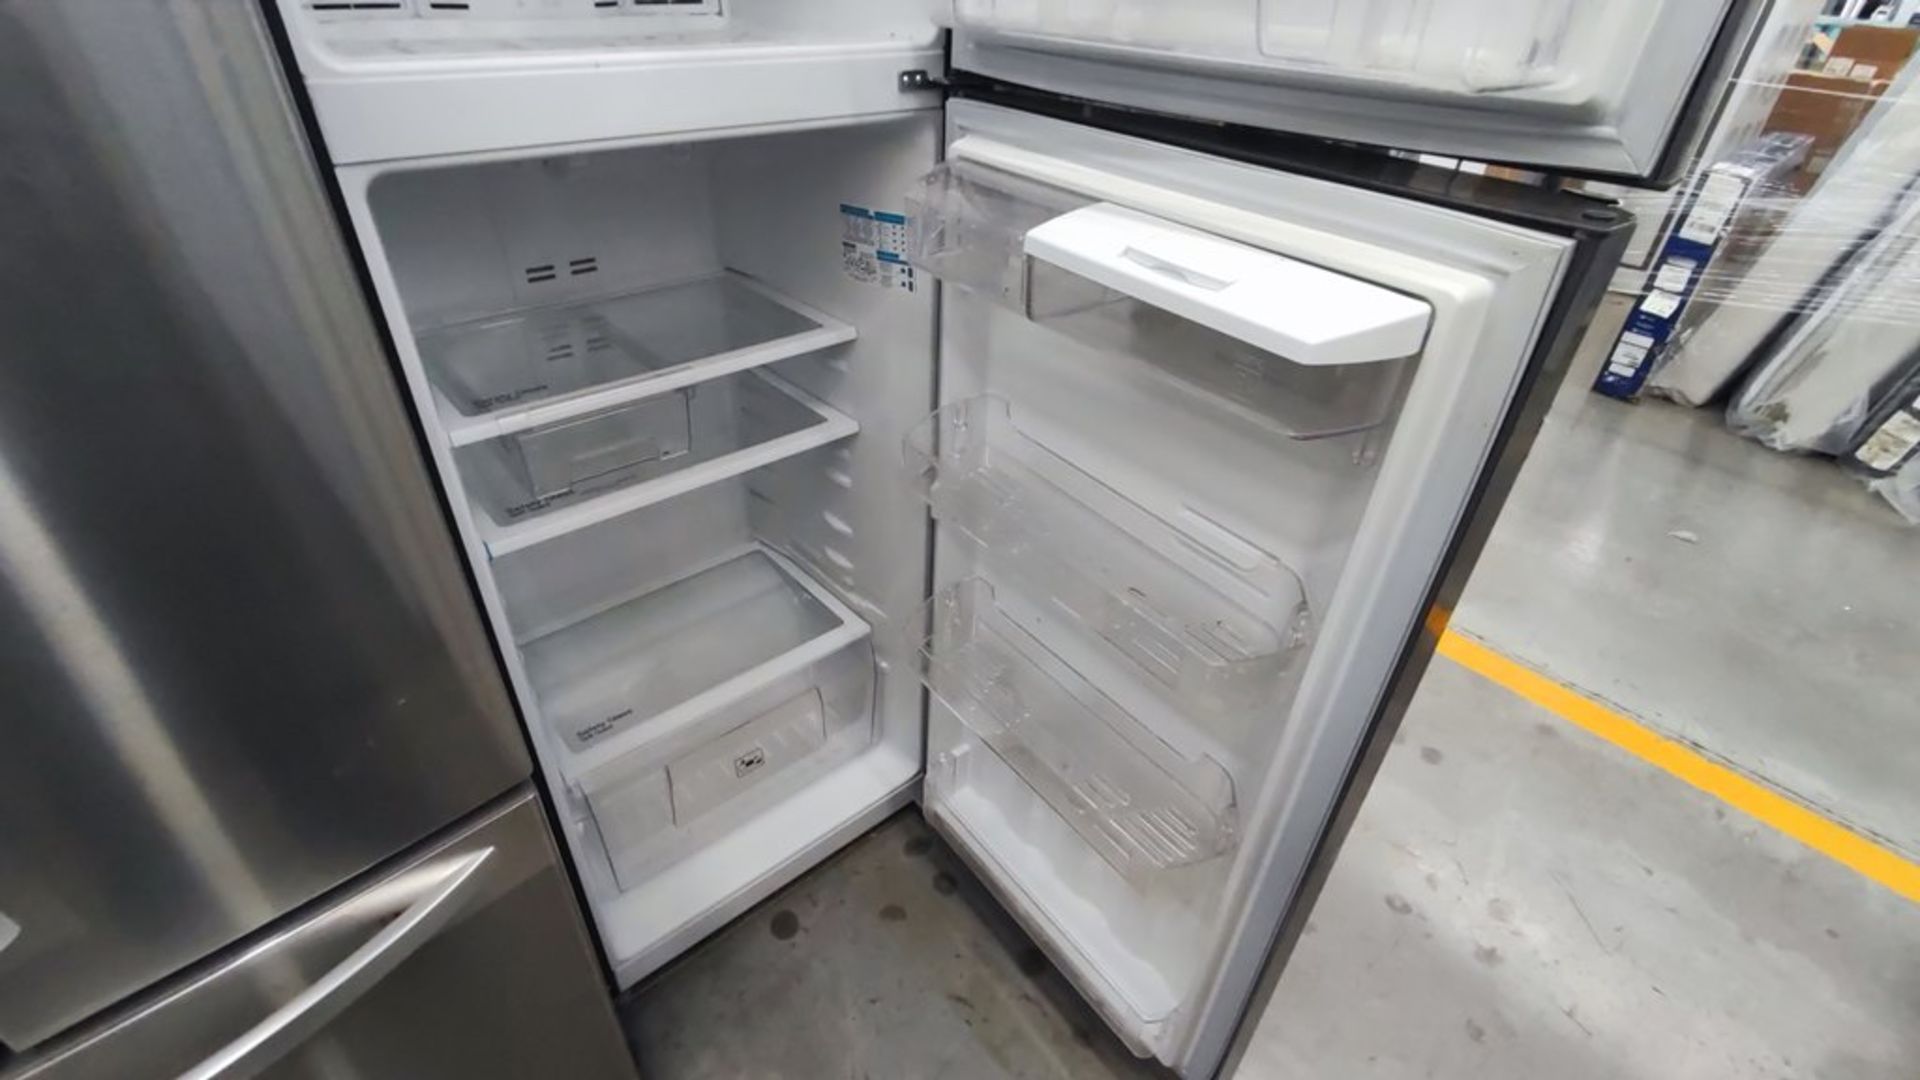 Lote de 2 refrigeradores contiene: 1 Refrigerador Marca Mabe, Modelo RMT400RY, No de serie 2201B410 - Image 14 of 15